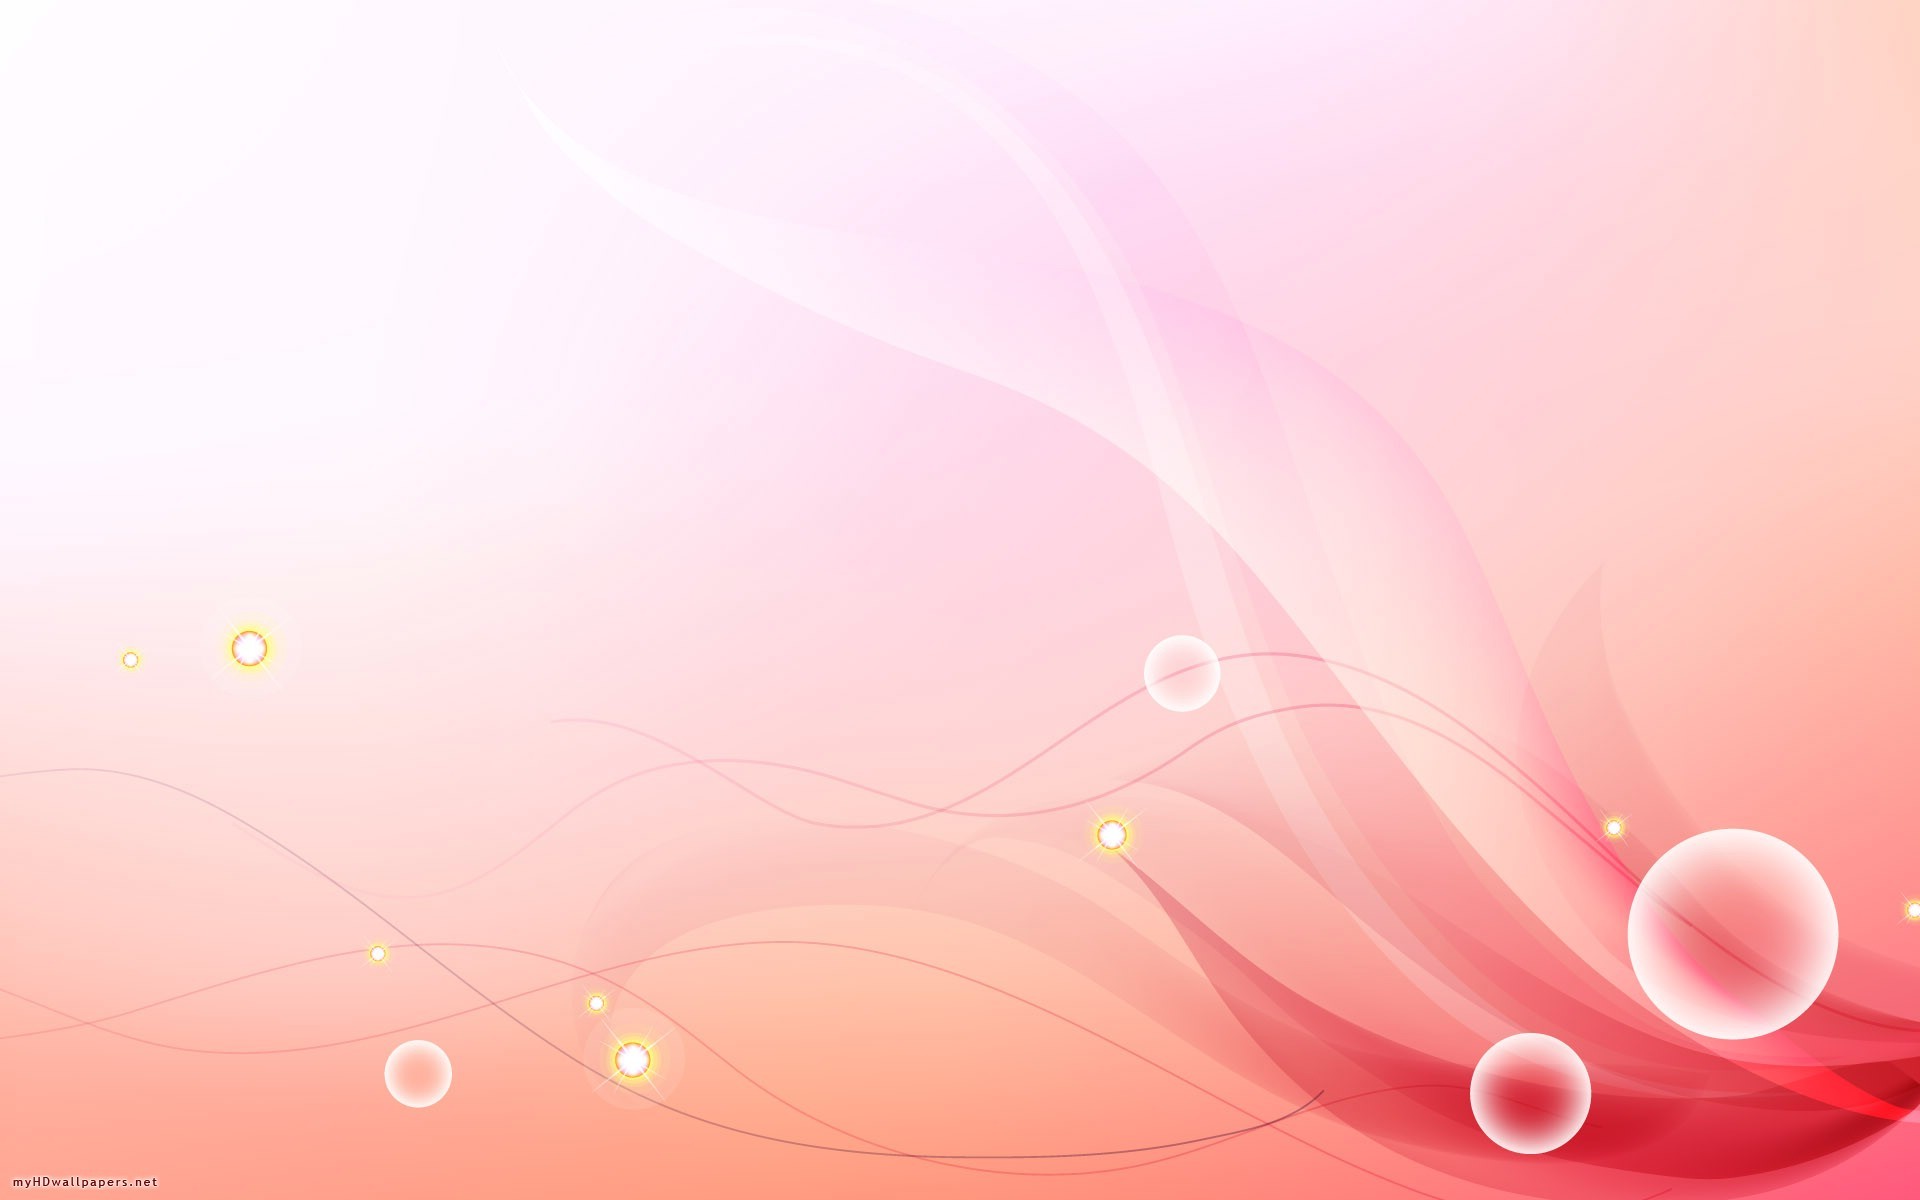 Background Design Red Light Desktop Wallpapers Hd Free - Light Red Background Design - HD Wallpaper 